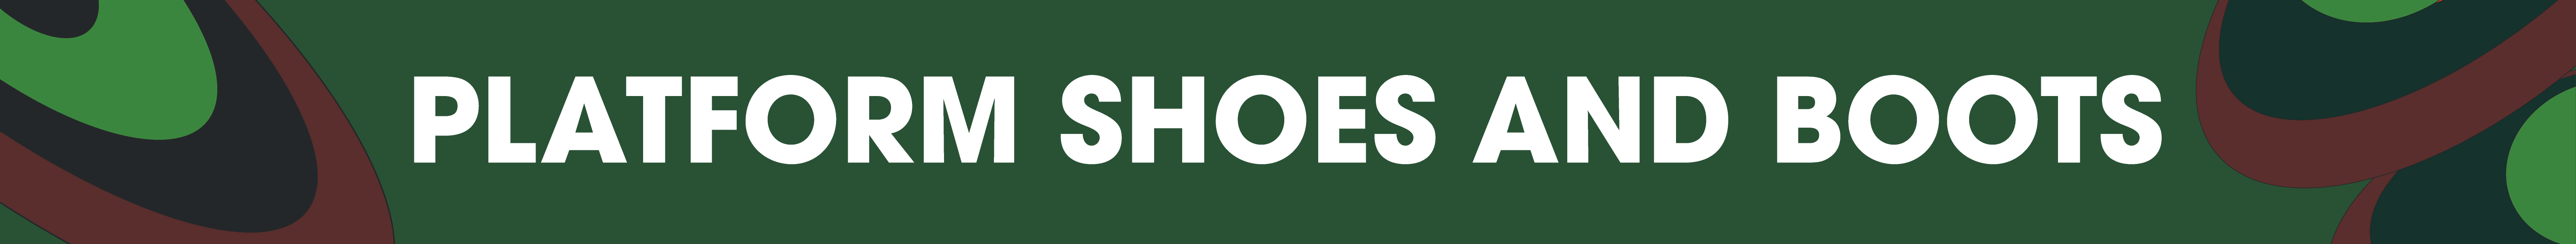 Platform Shoes header image